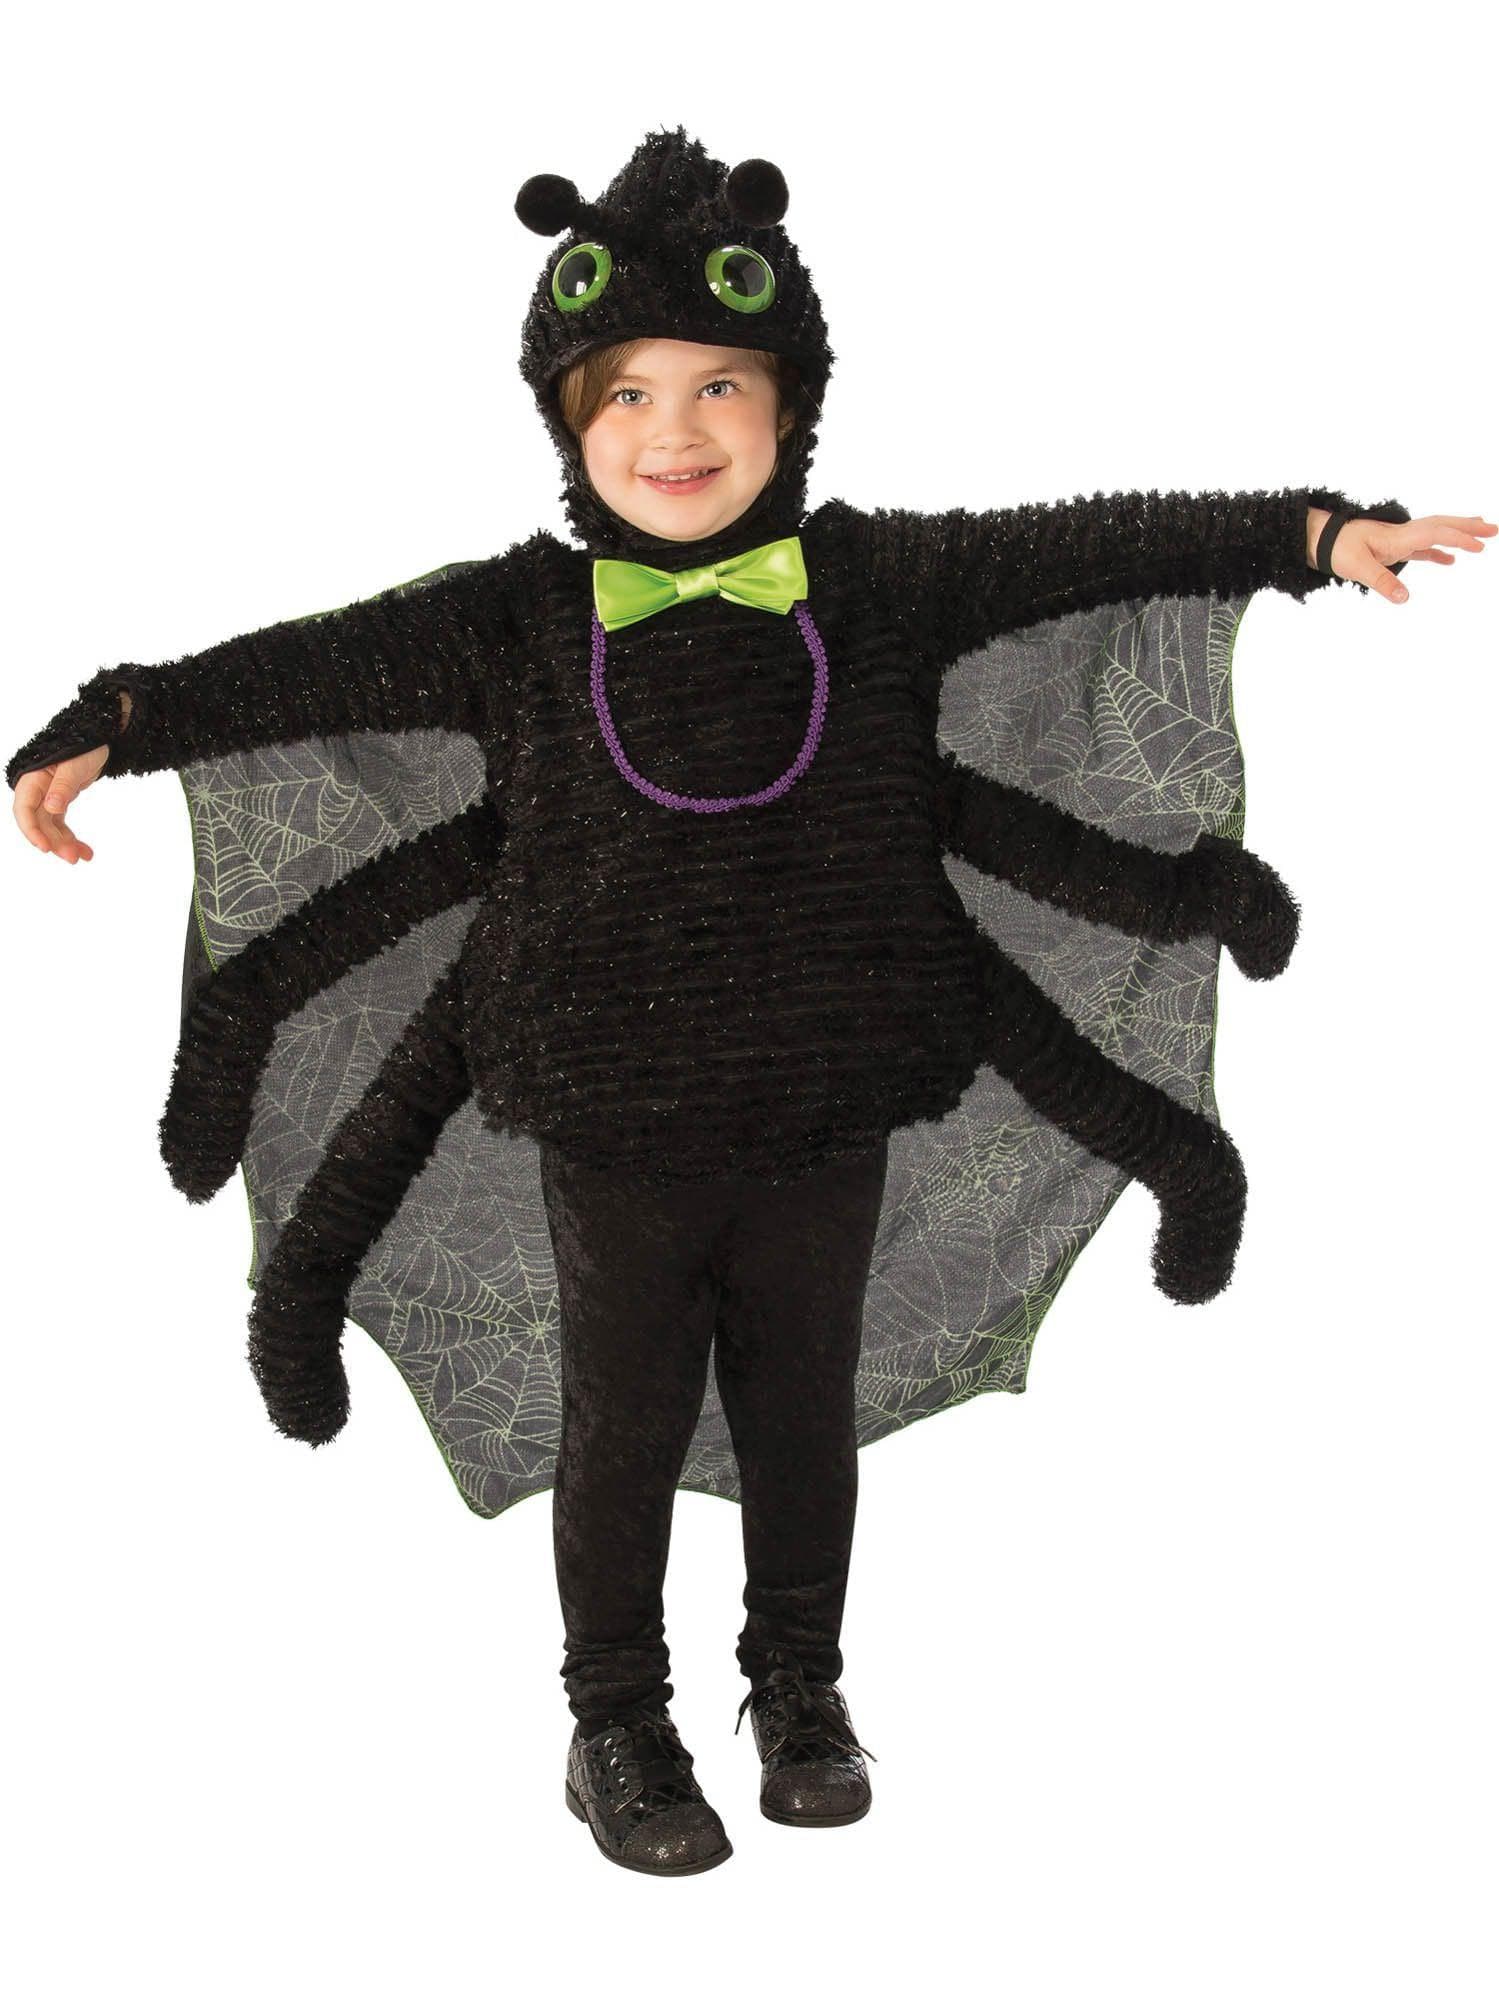 Baby/Toddler Eensy Weensy Spider Costume - costumes.com